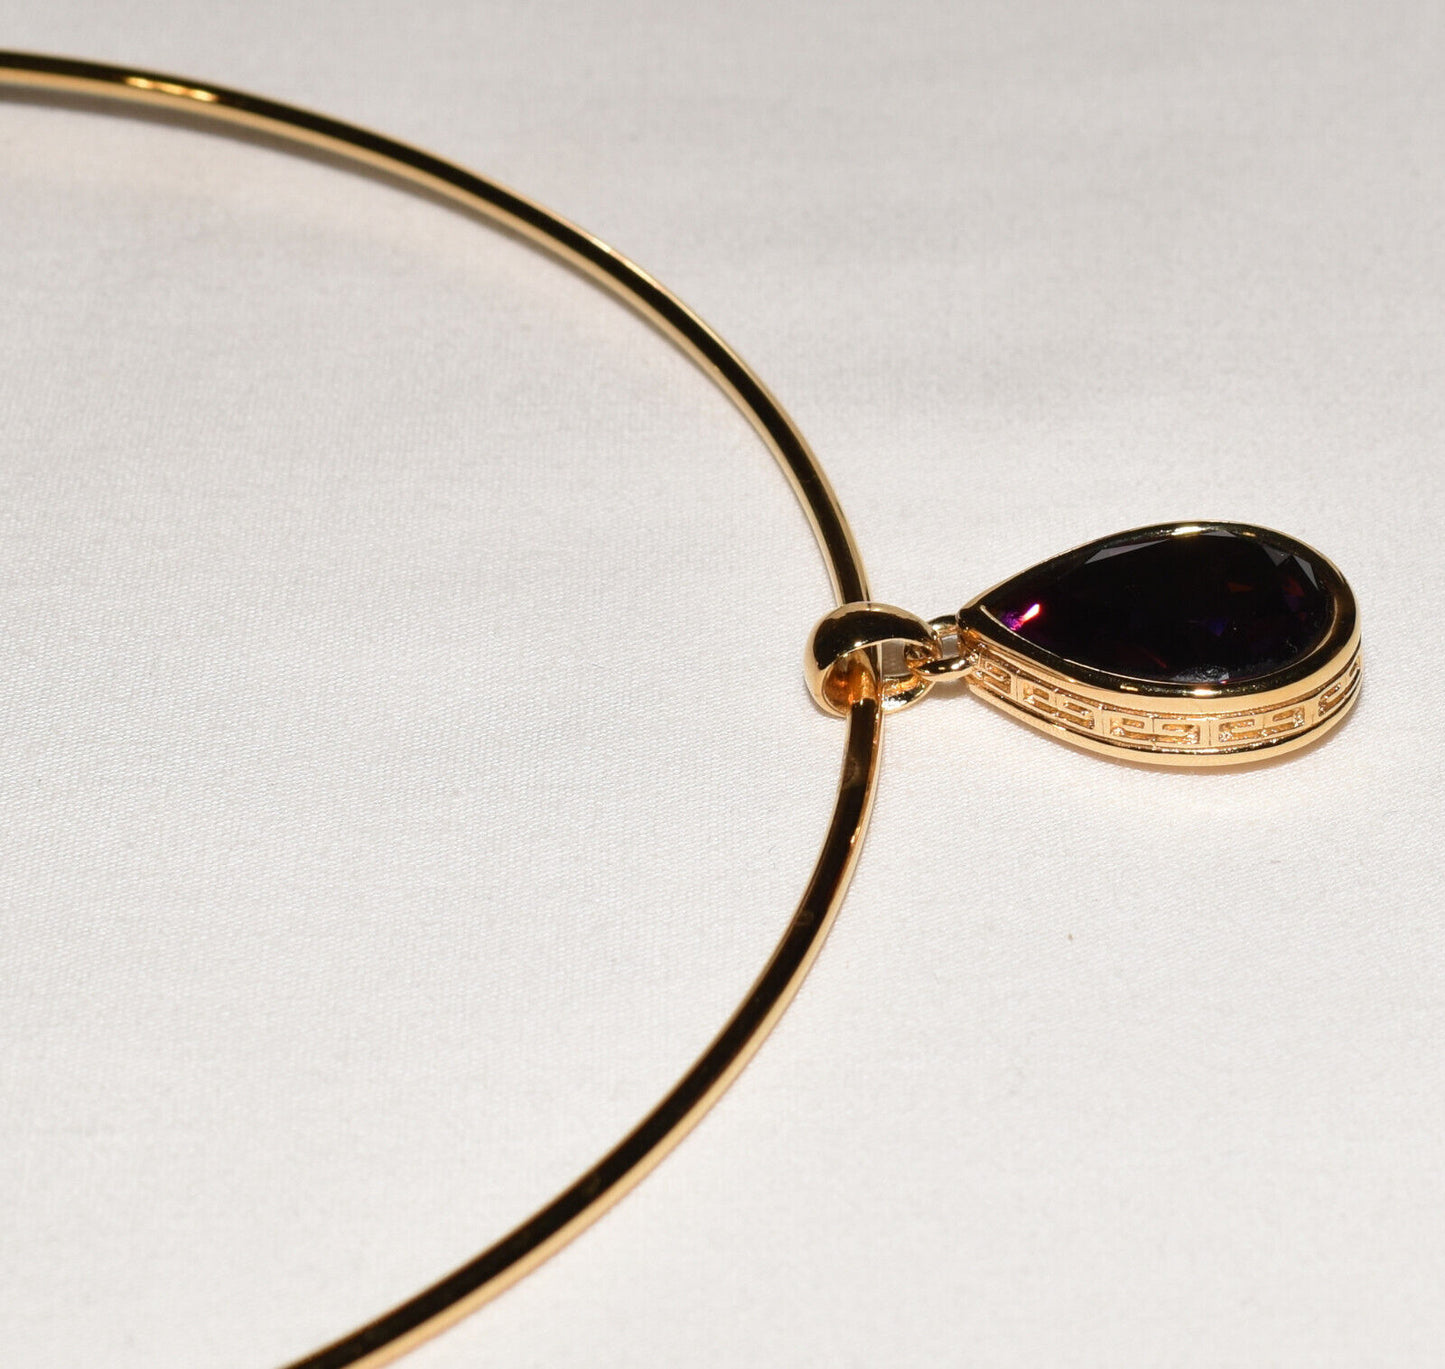 Vintage Givenchy Bijoux Paris Gold Collar Necklace w Purple Teardrop Stone / Pendant